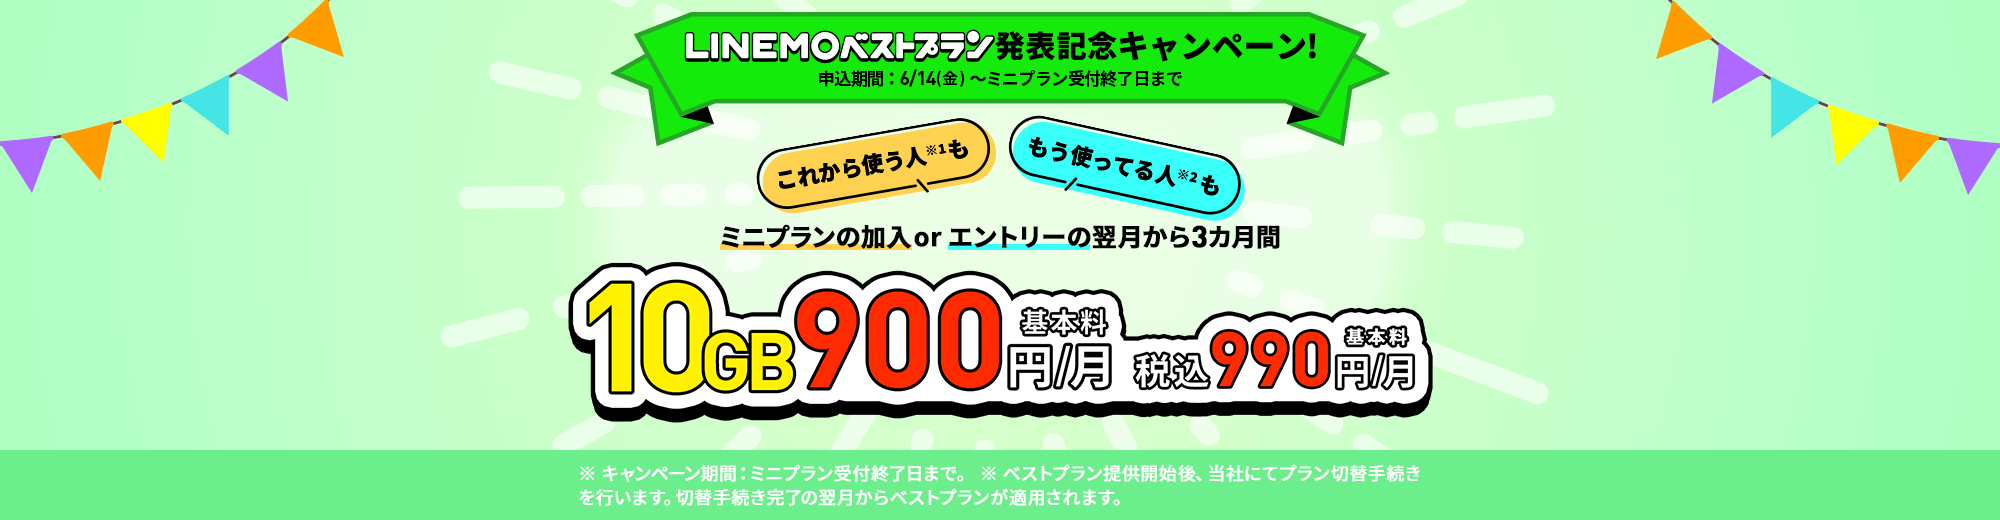 キャンペーン期間中に、LINEMOの「ミニプラン」を契約で、開通日の翌月からデータ追加購入（550円/1GB）が毎月最大7回まで割引します。